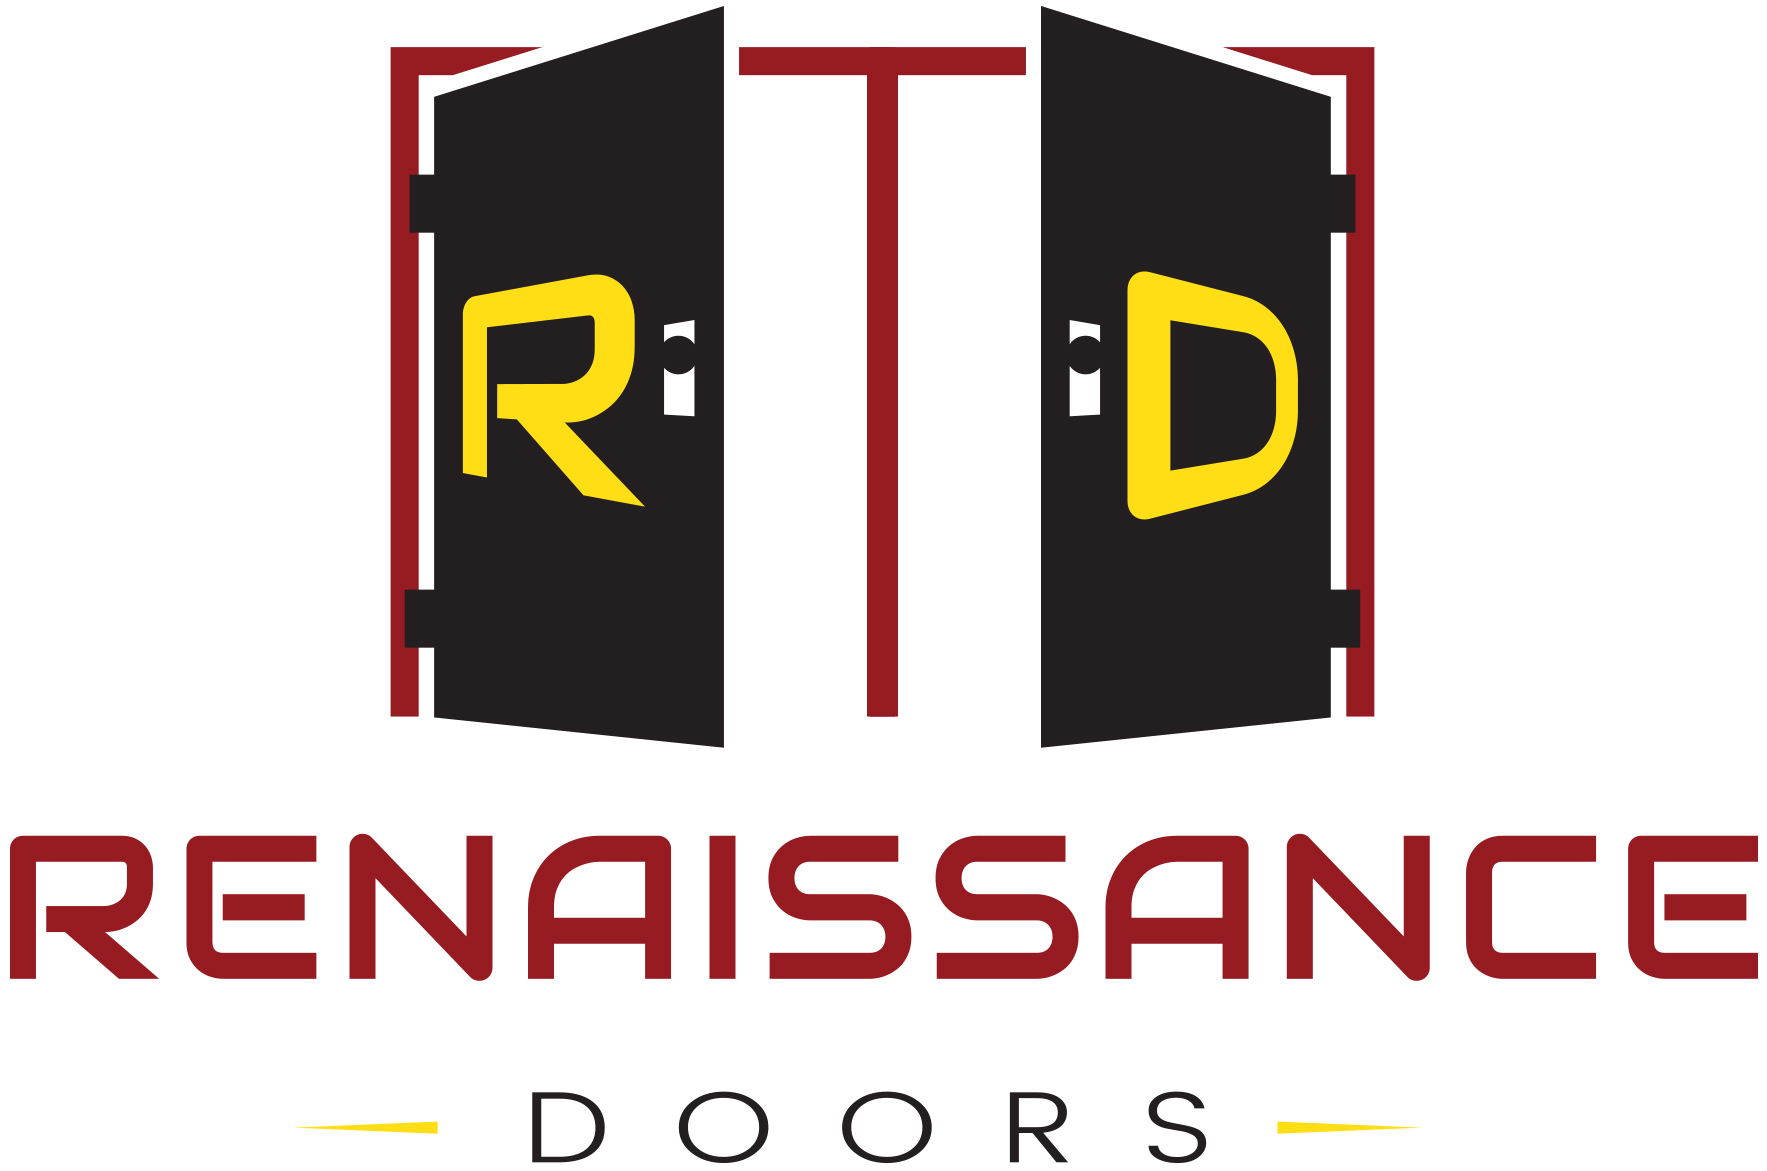 Renaissance Doors LLC logo